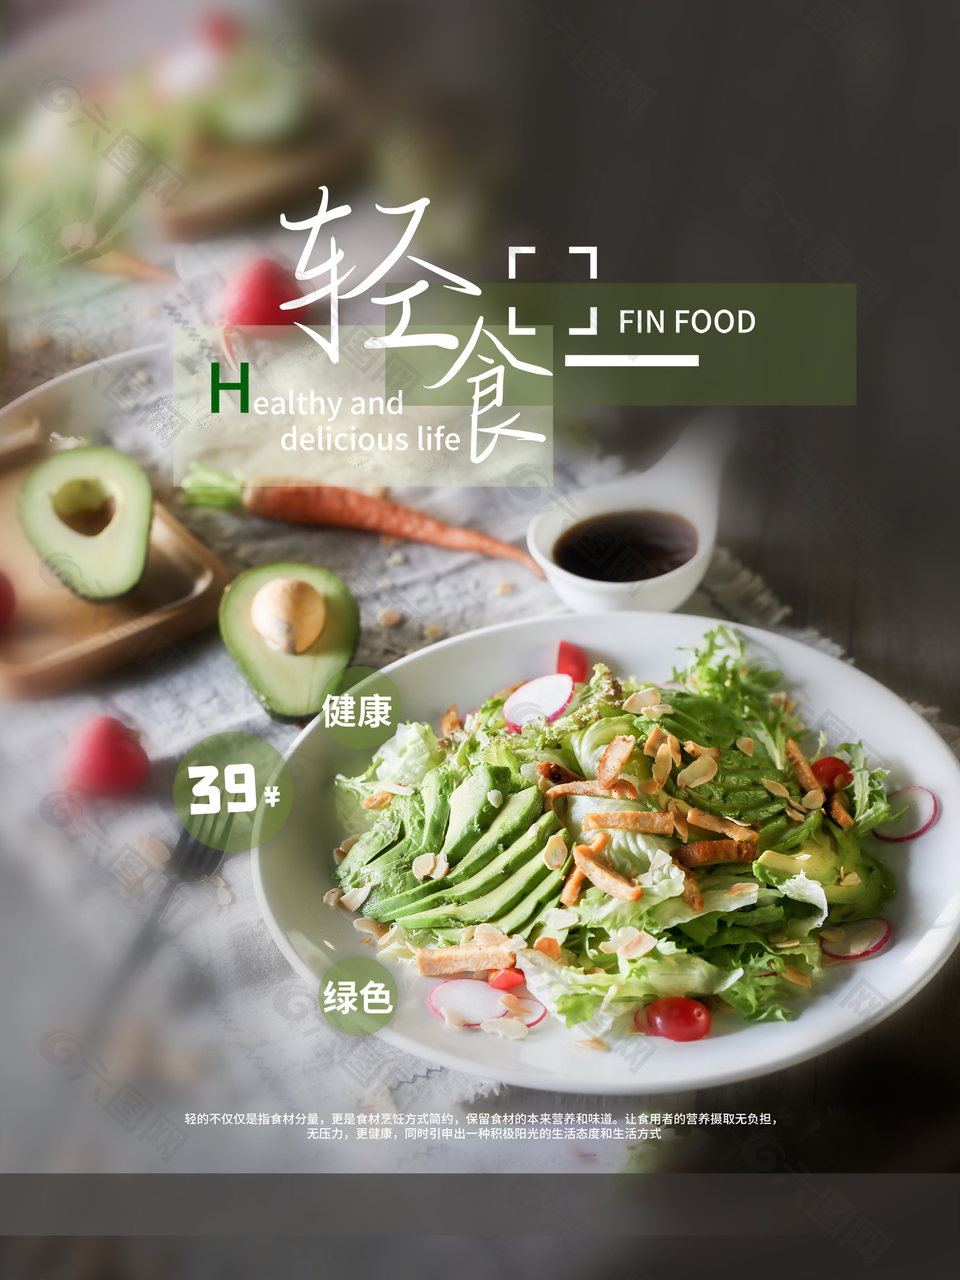 绿色蔬菜轻食健康生活宣传海报